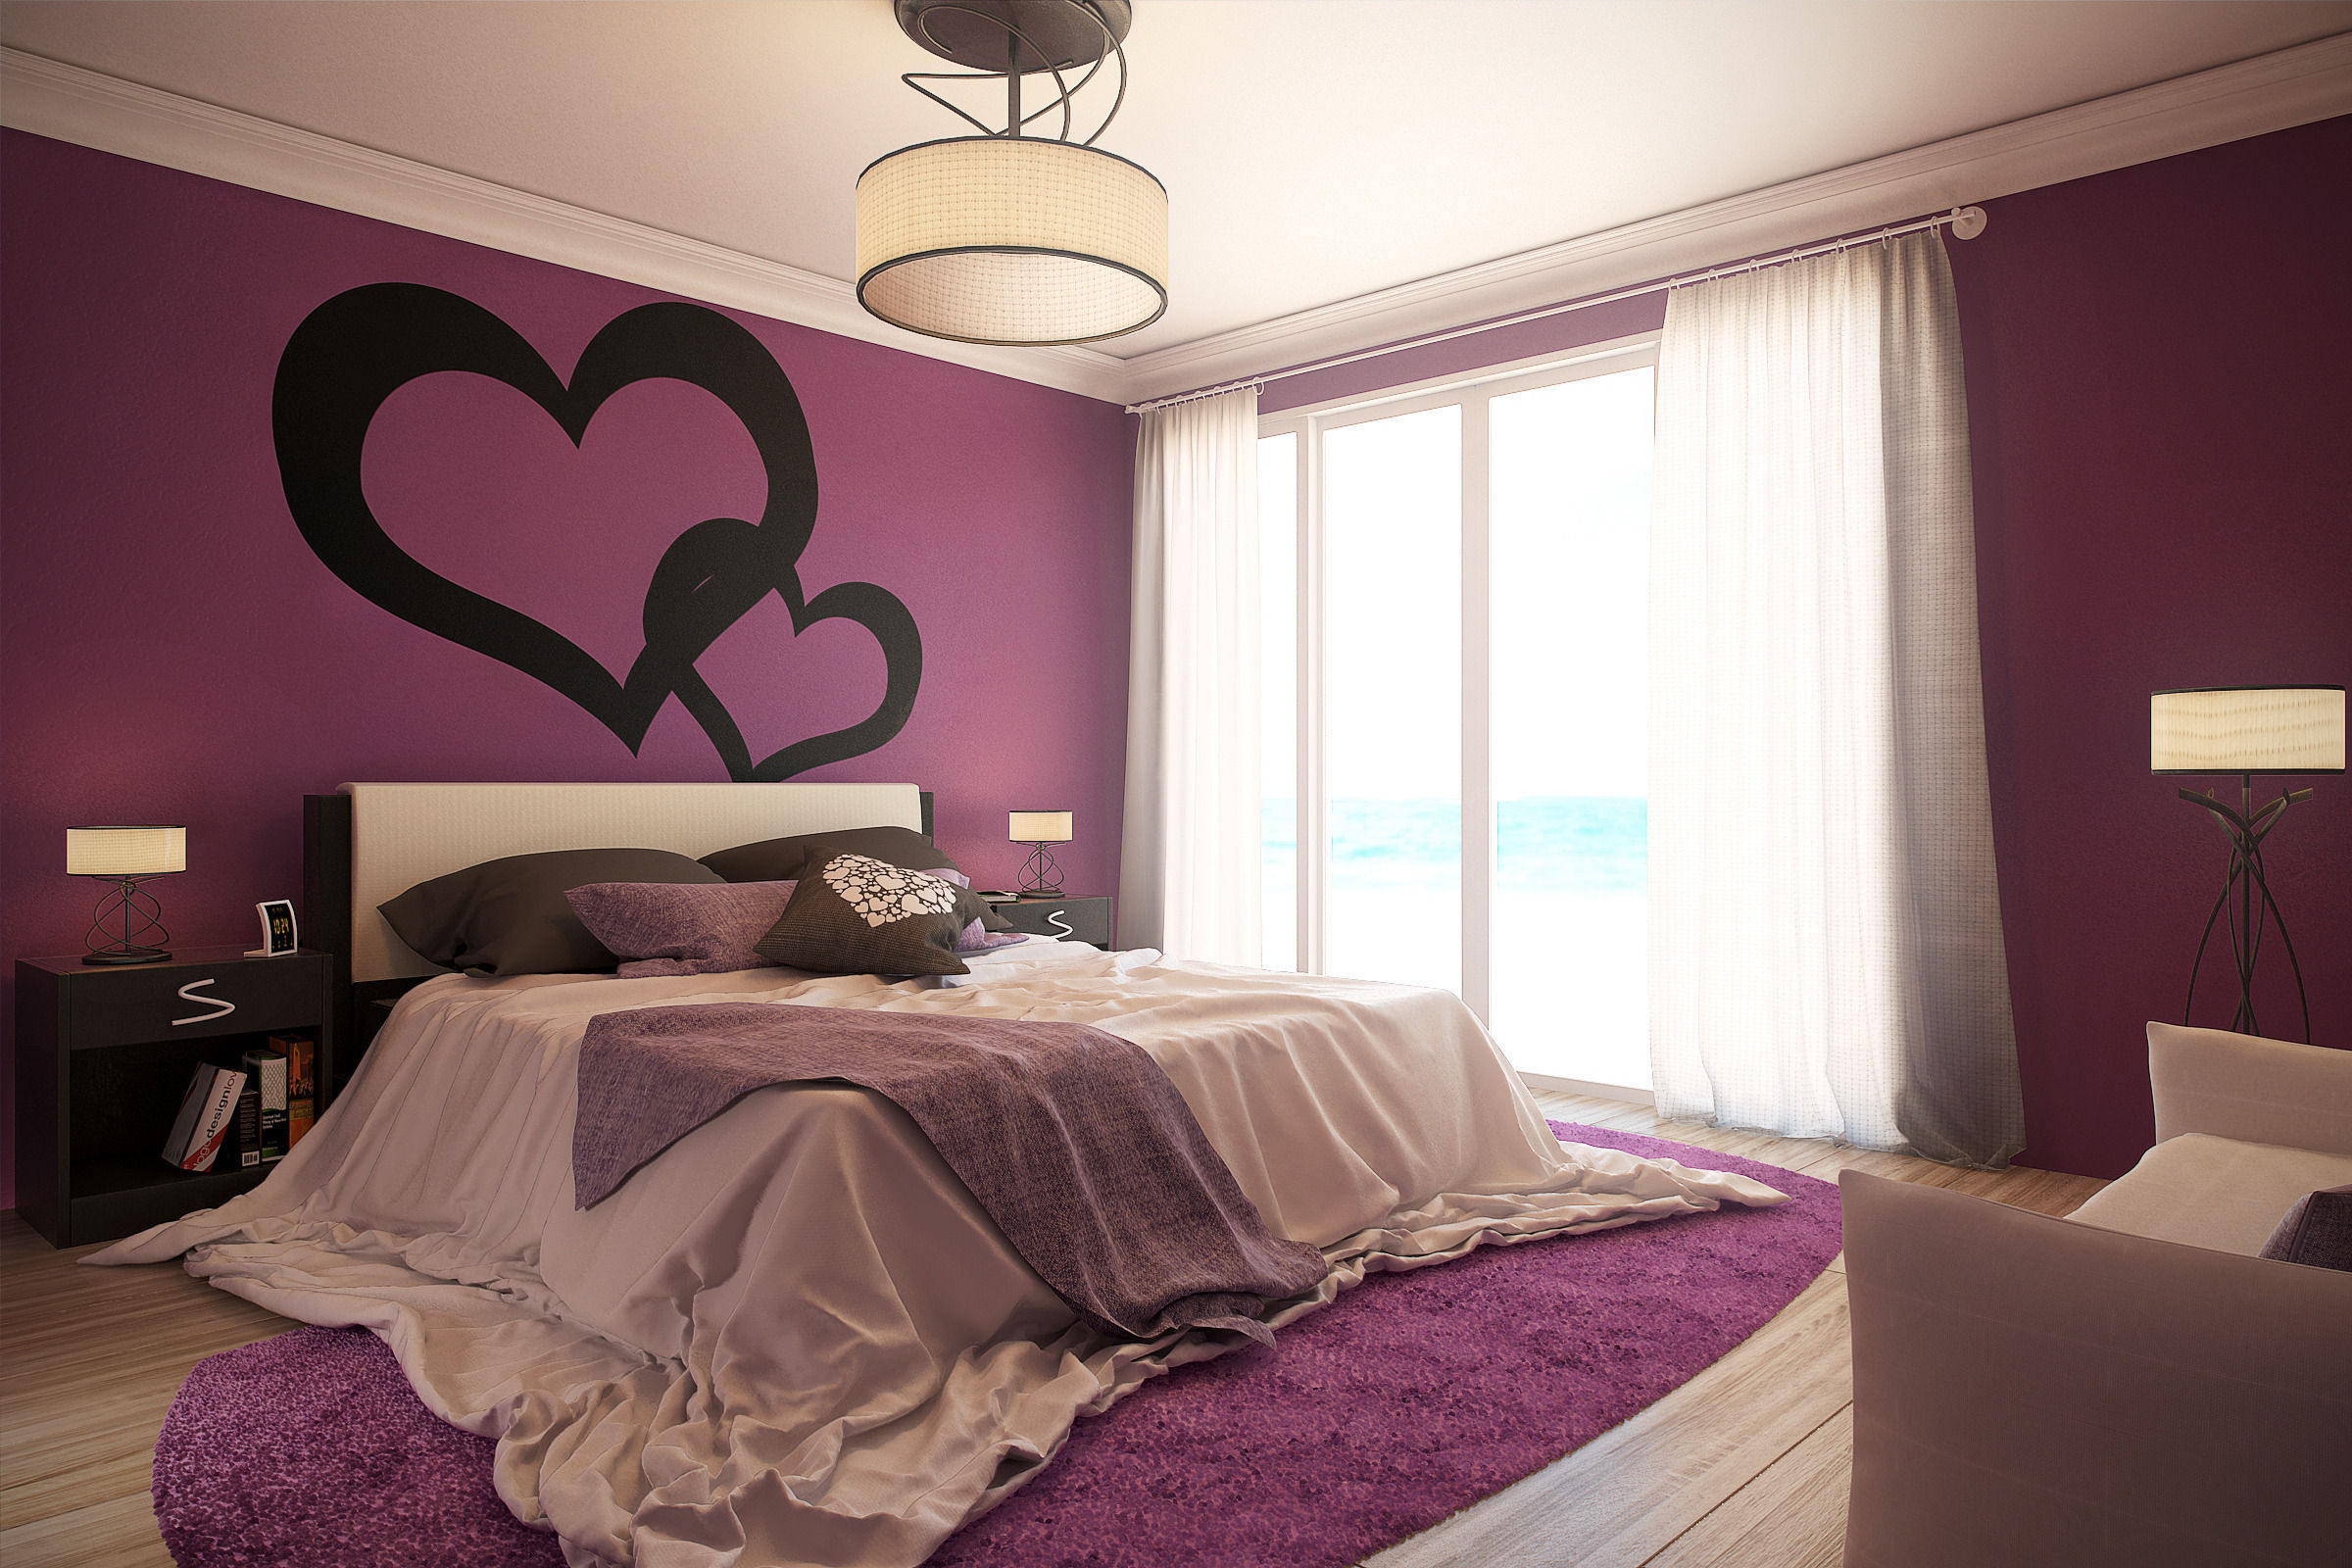 Включи bedroom. Красивая спальня. Красивые обои в спальню. Красивые цвета для комнаты. Красивая комната.